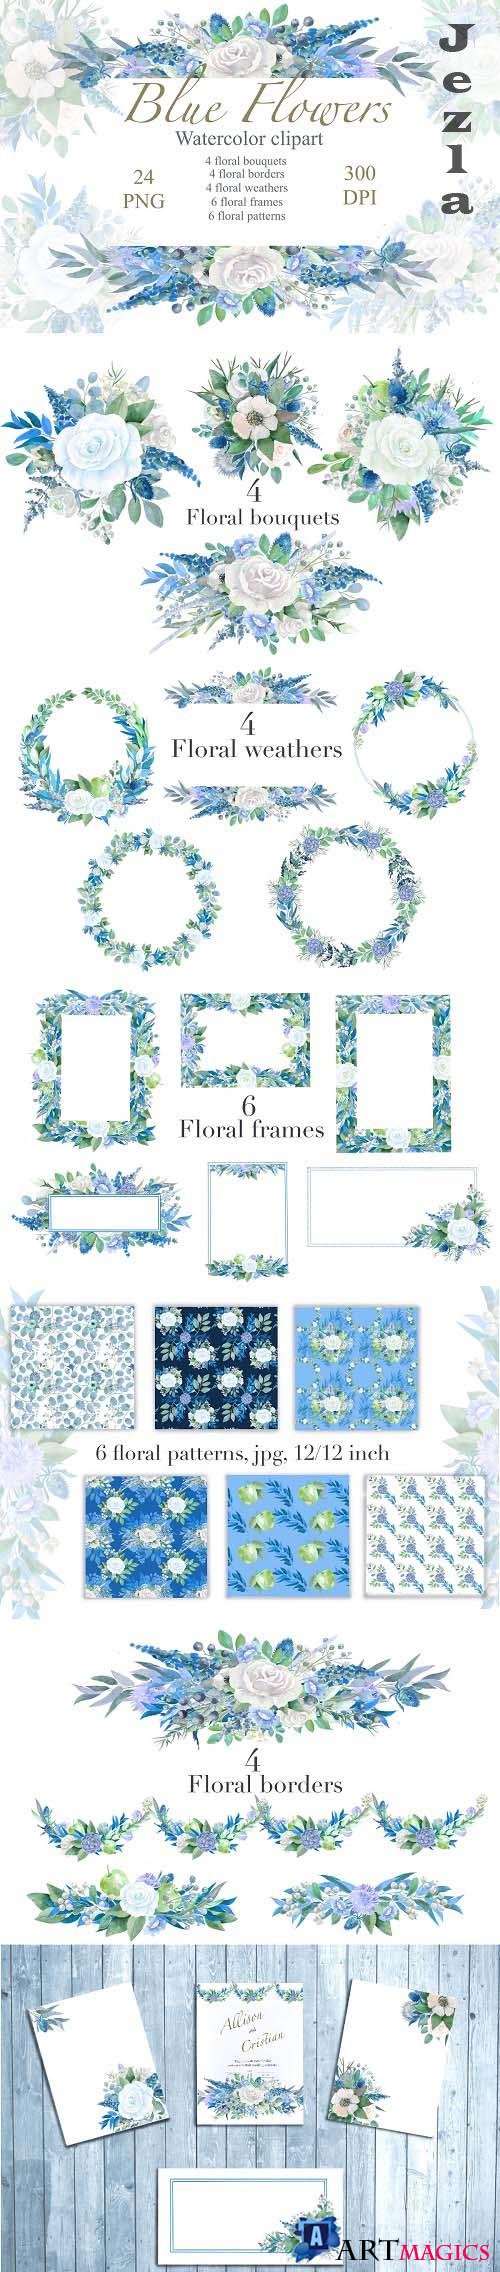 Blue Floral watercolor Clipart, Wedding Arrangements, Frames - 1425792